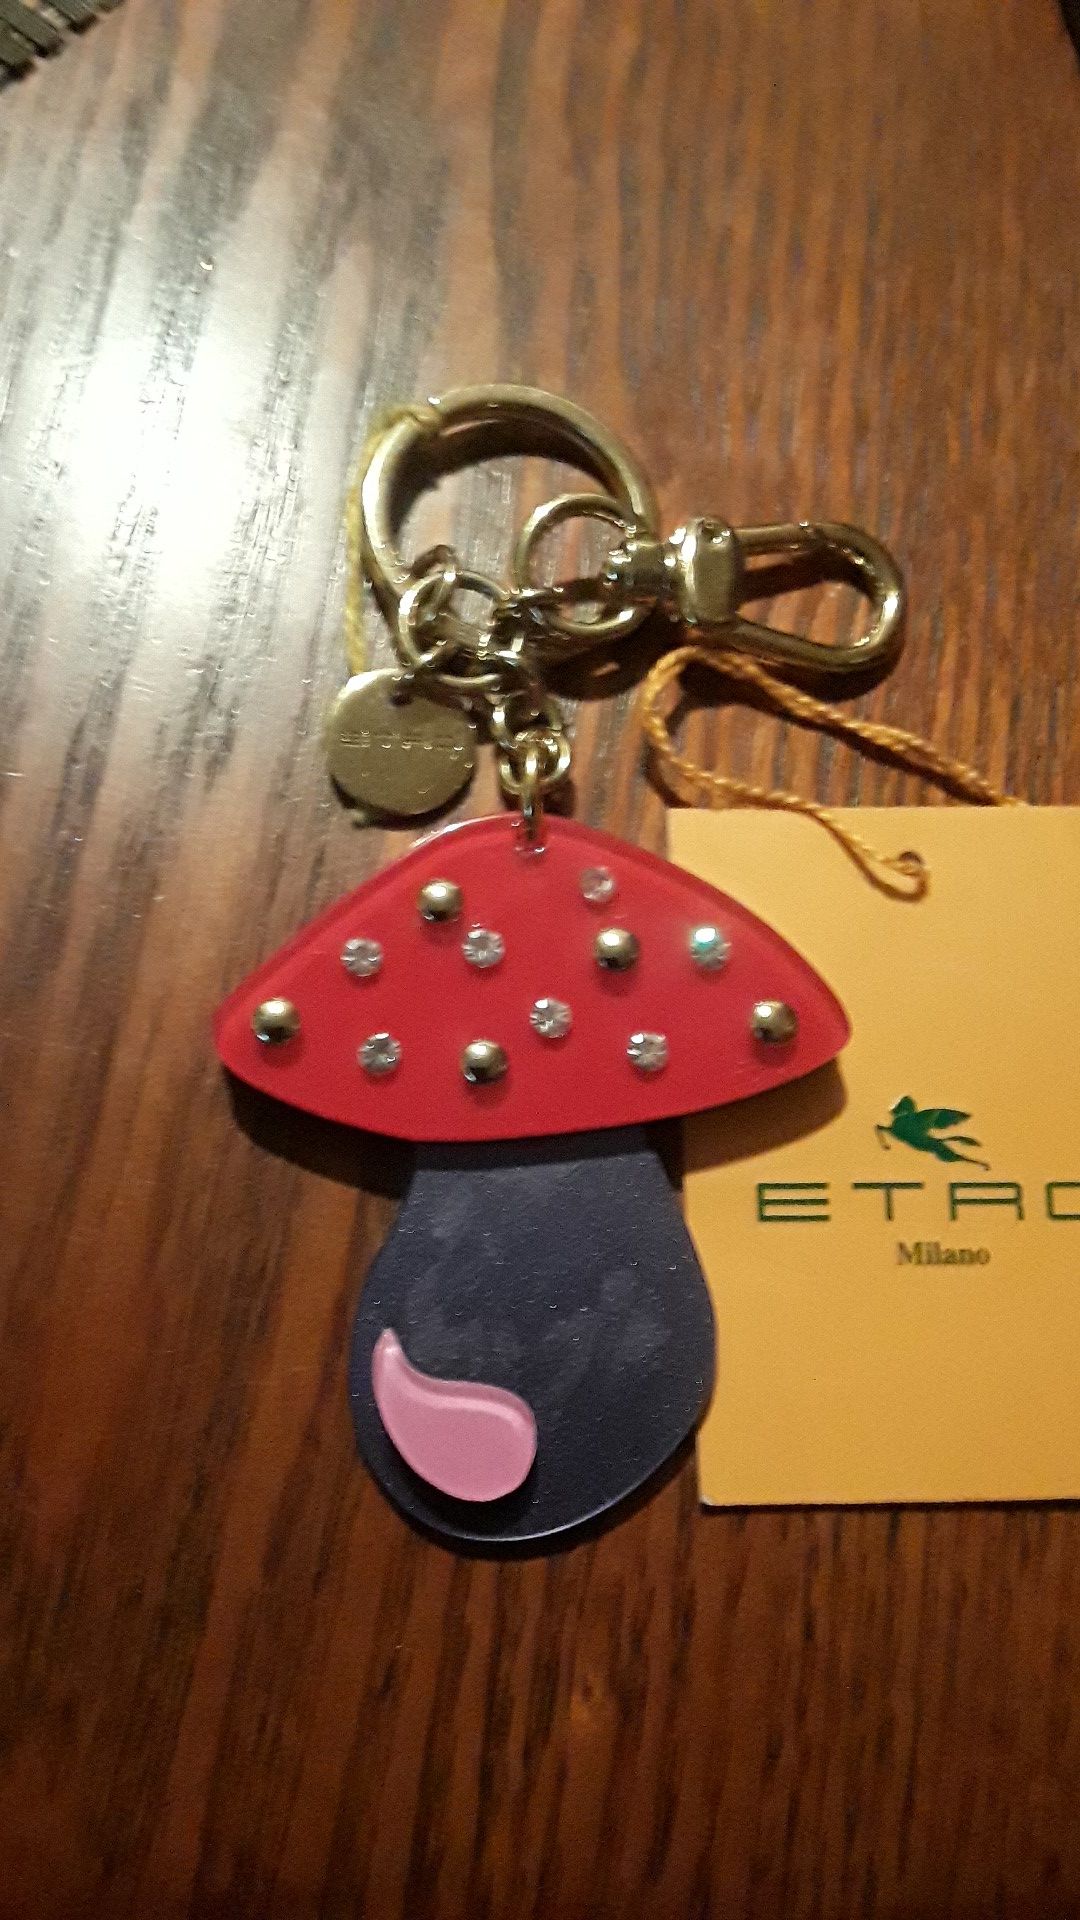 Cute Italian ETRO MILANO key chain. Made in Italy.